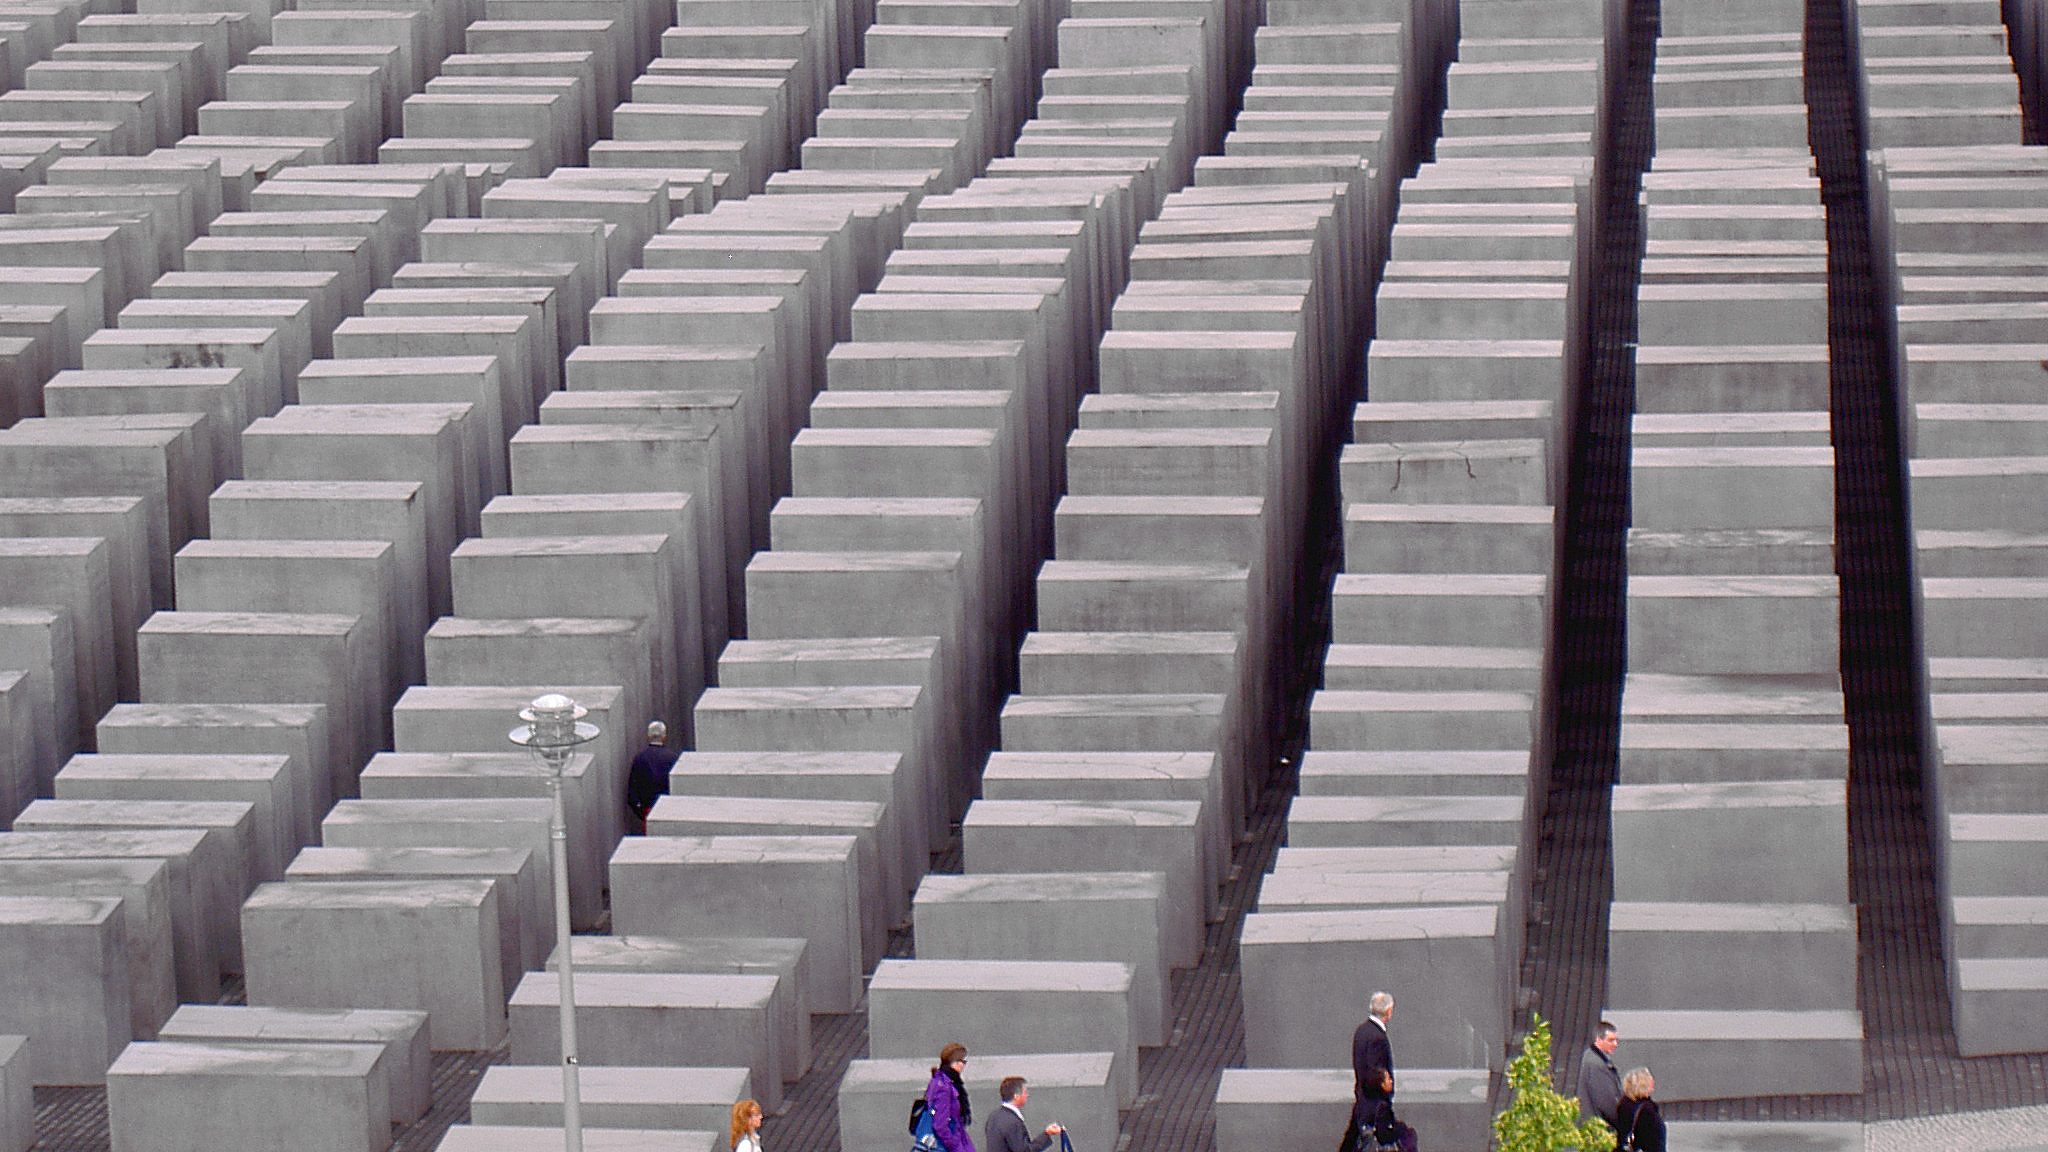 The Holocaust memorial in Berlin.